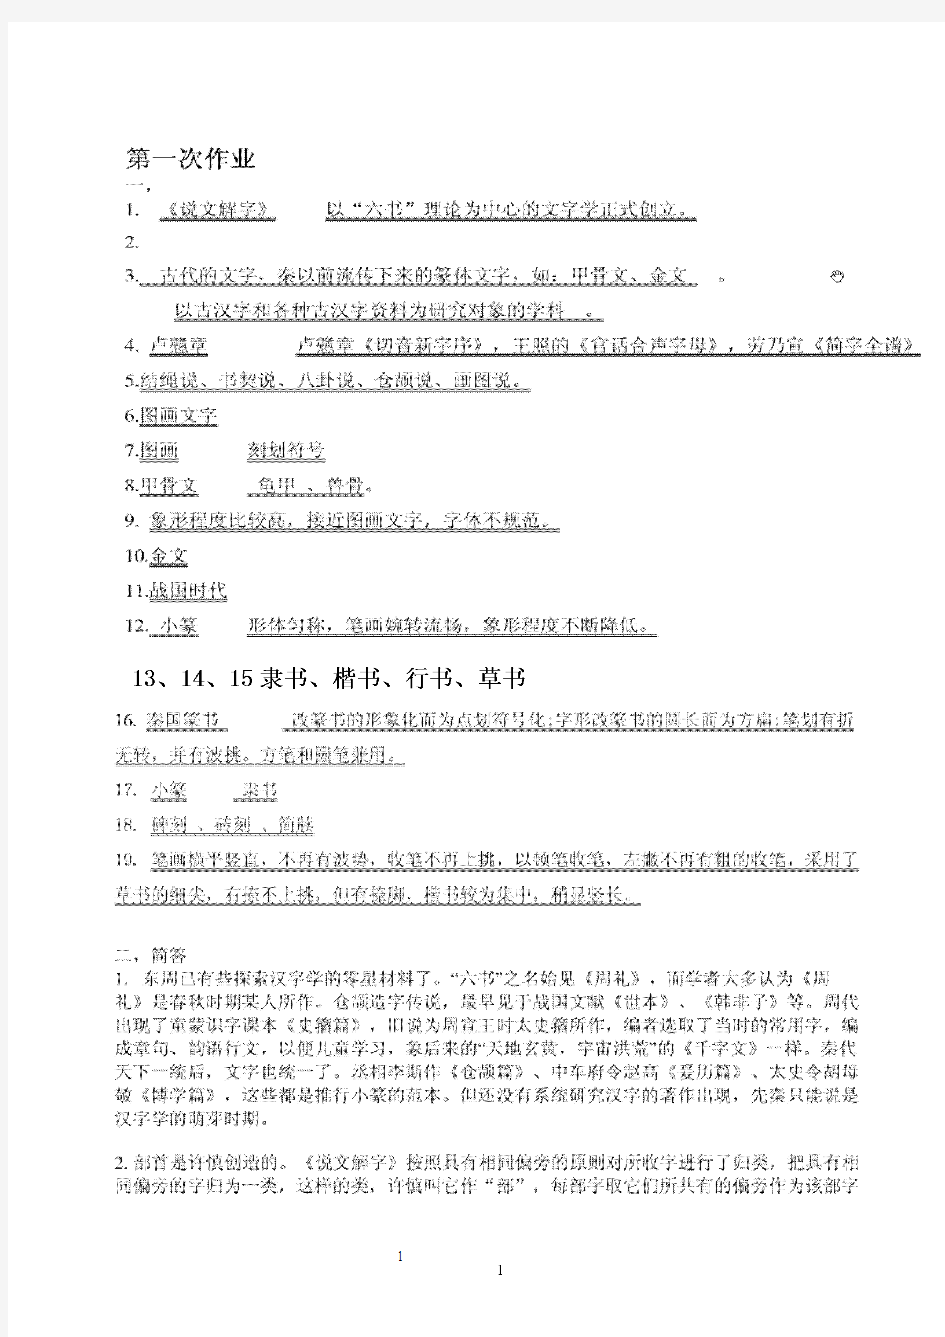 古代汉语专题形成性考核作业答案2010年汉语言文学电大